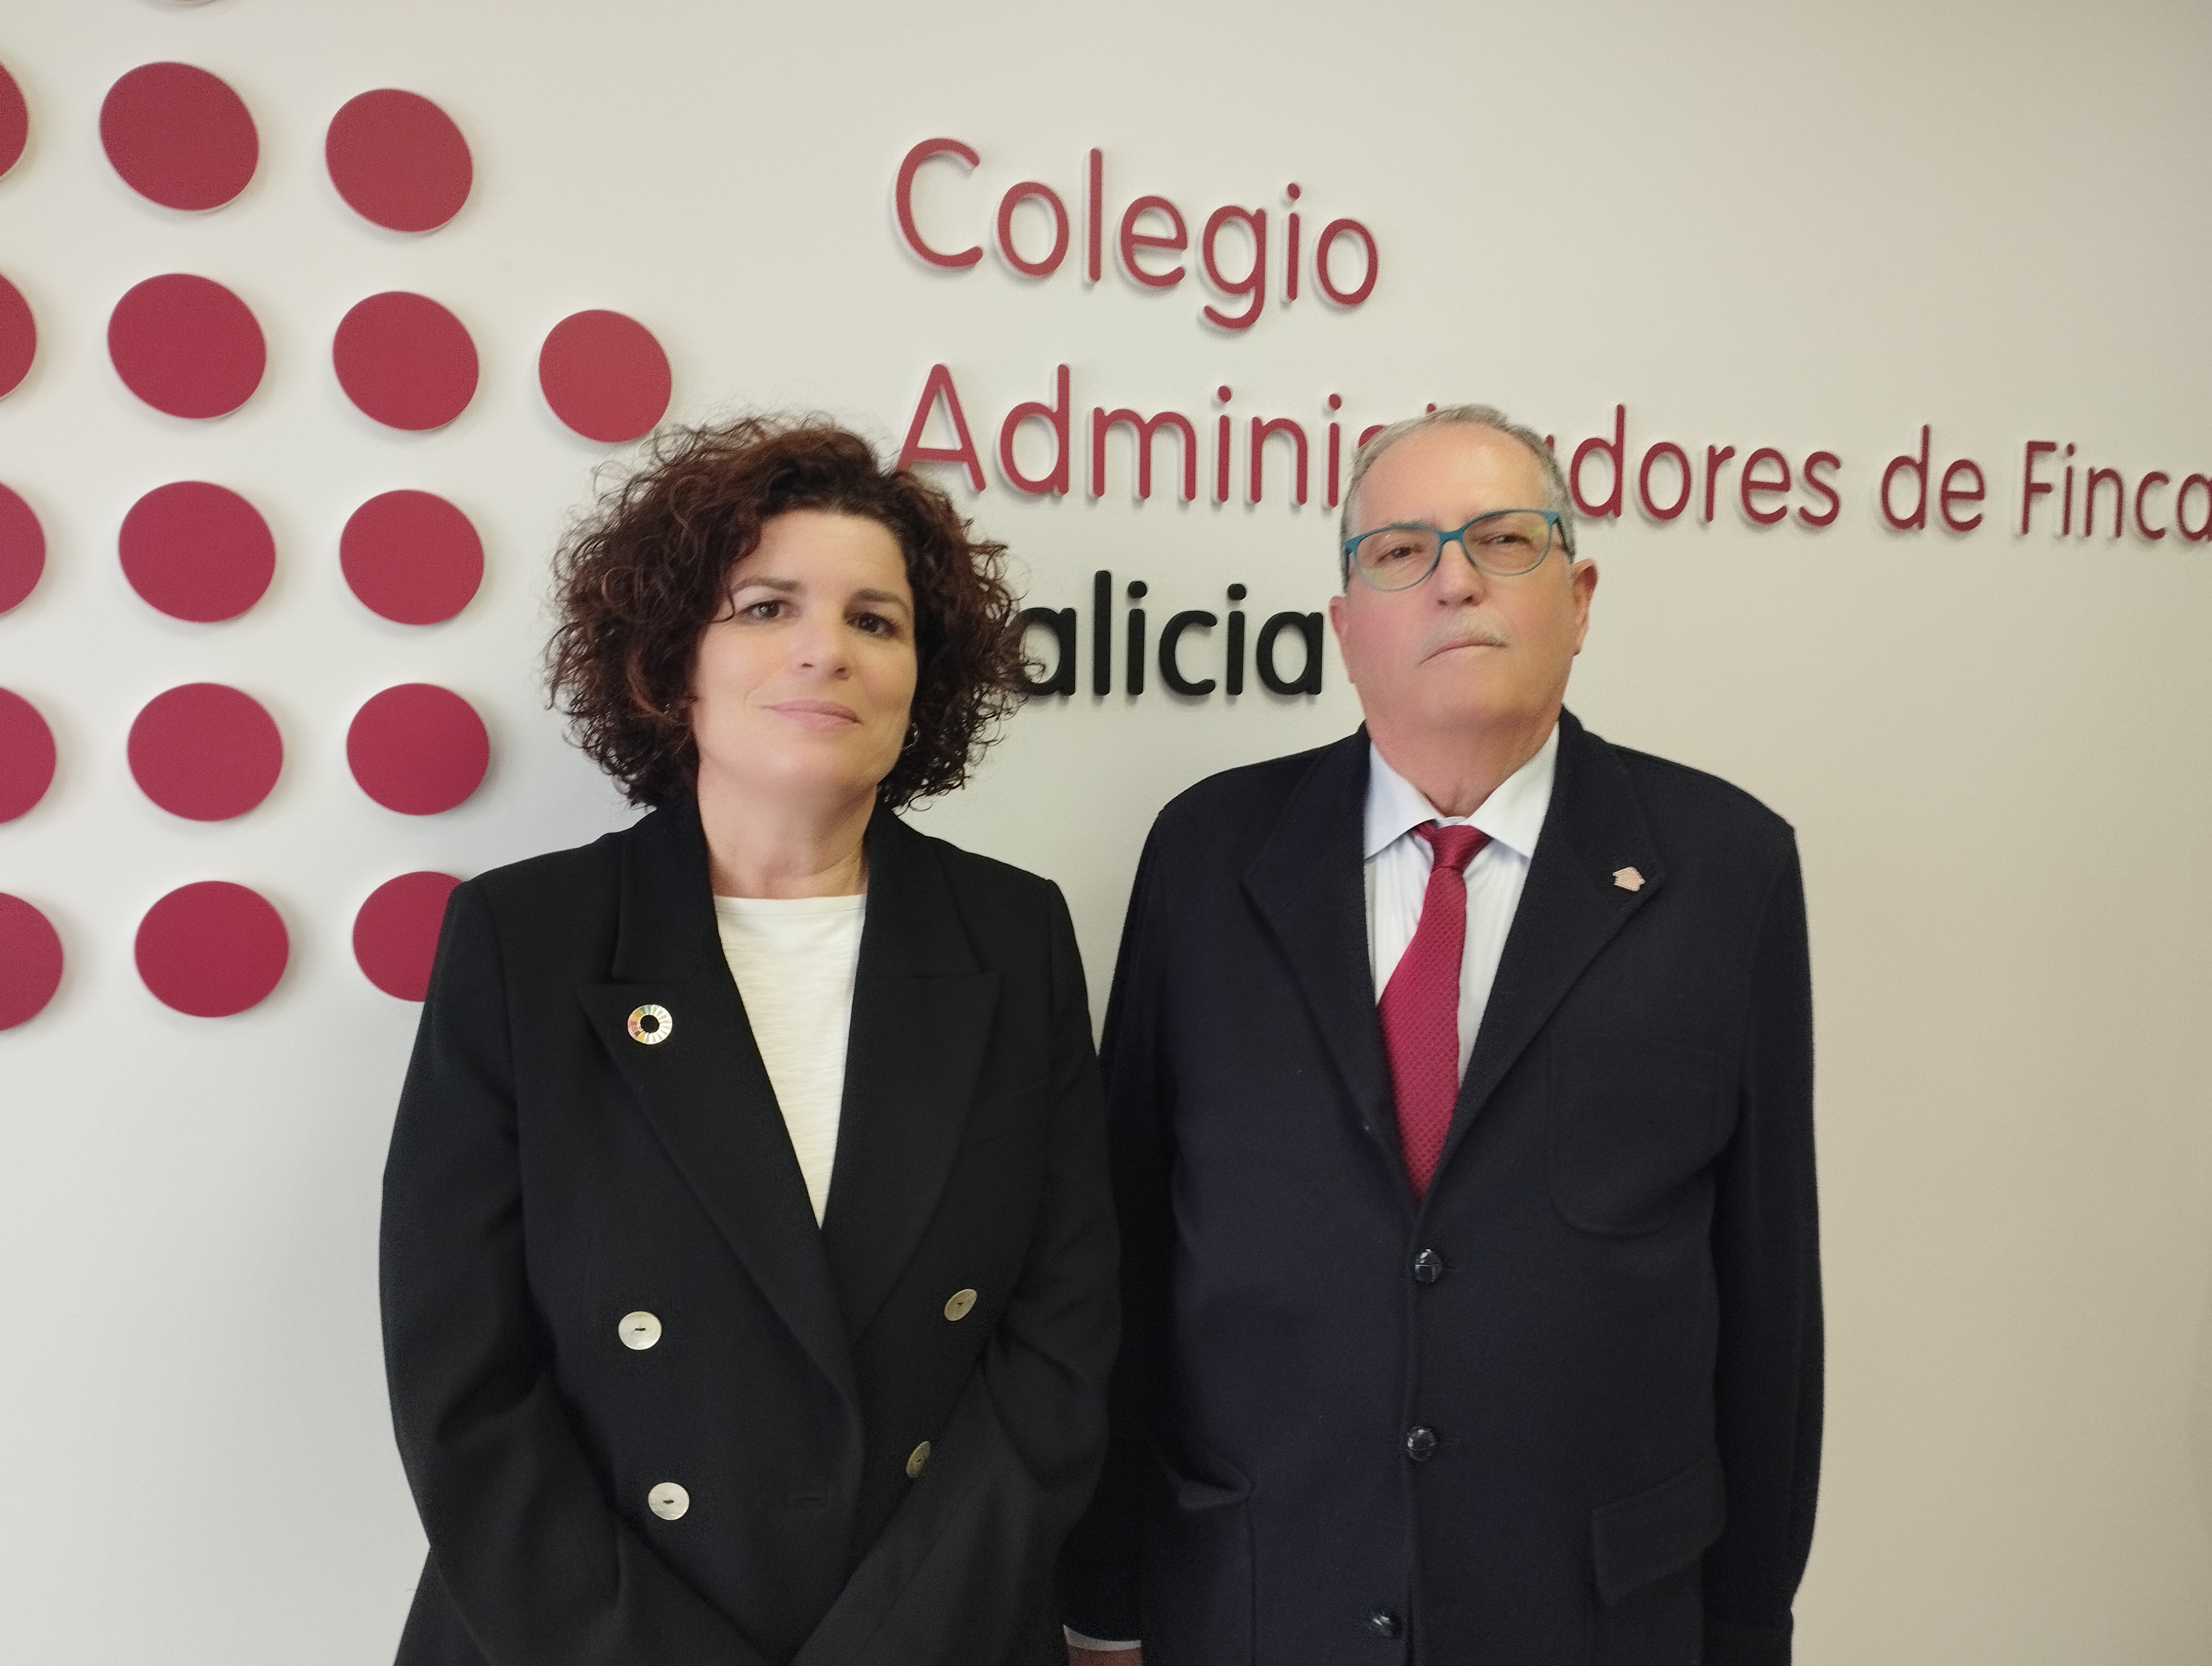 El presidente de los administradores de fincas gallegos recuerda que las ayudas pueden llegar hasta el 80%